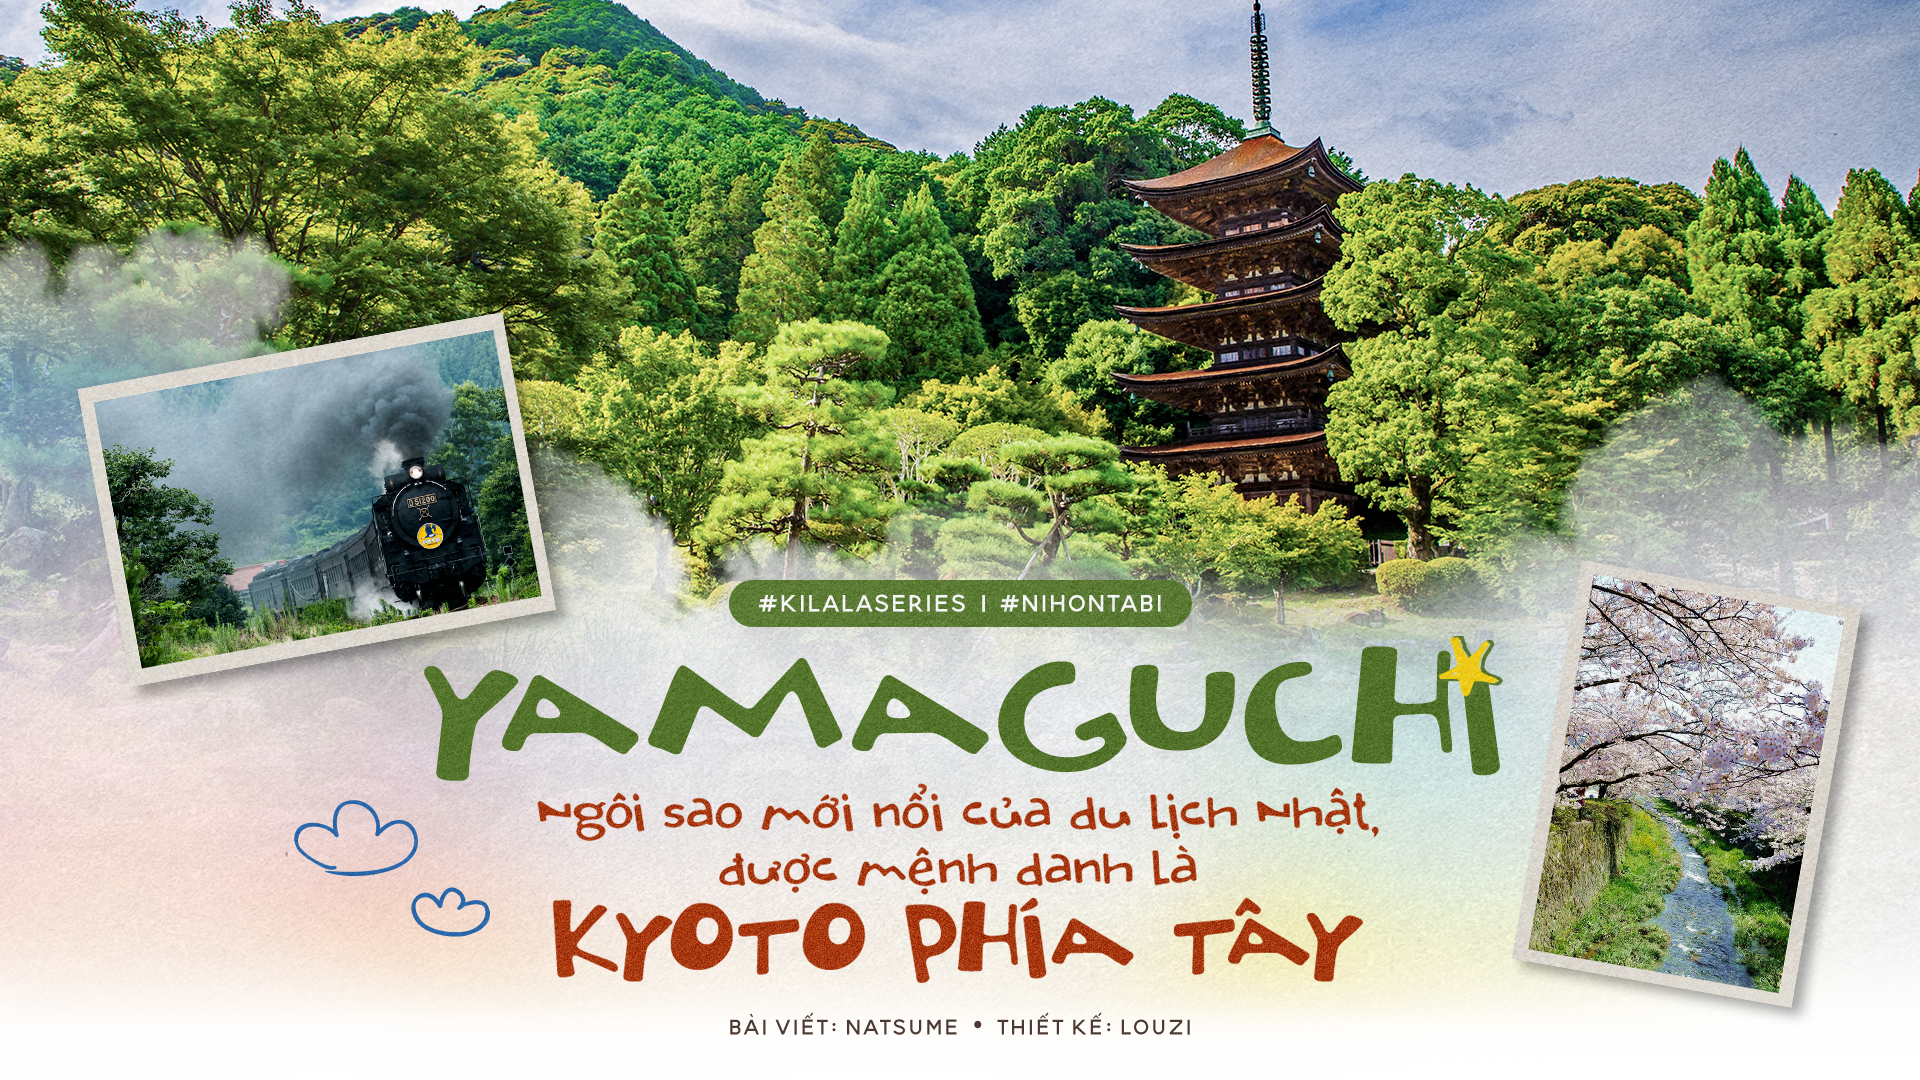 Yamaguchi - “Ngôi sao“ mới nổi của du lịch Nhật, được mệnh danh là Kyoto phía Tây.